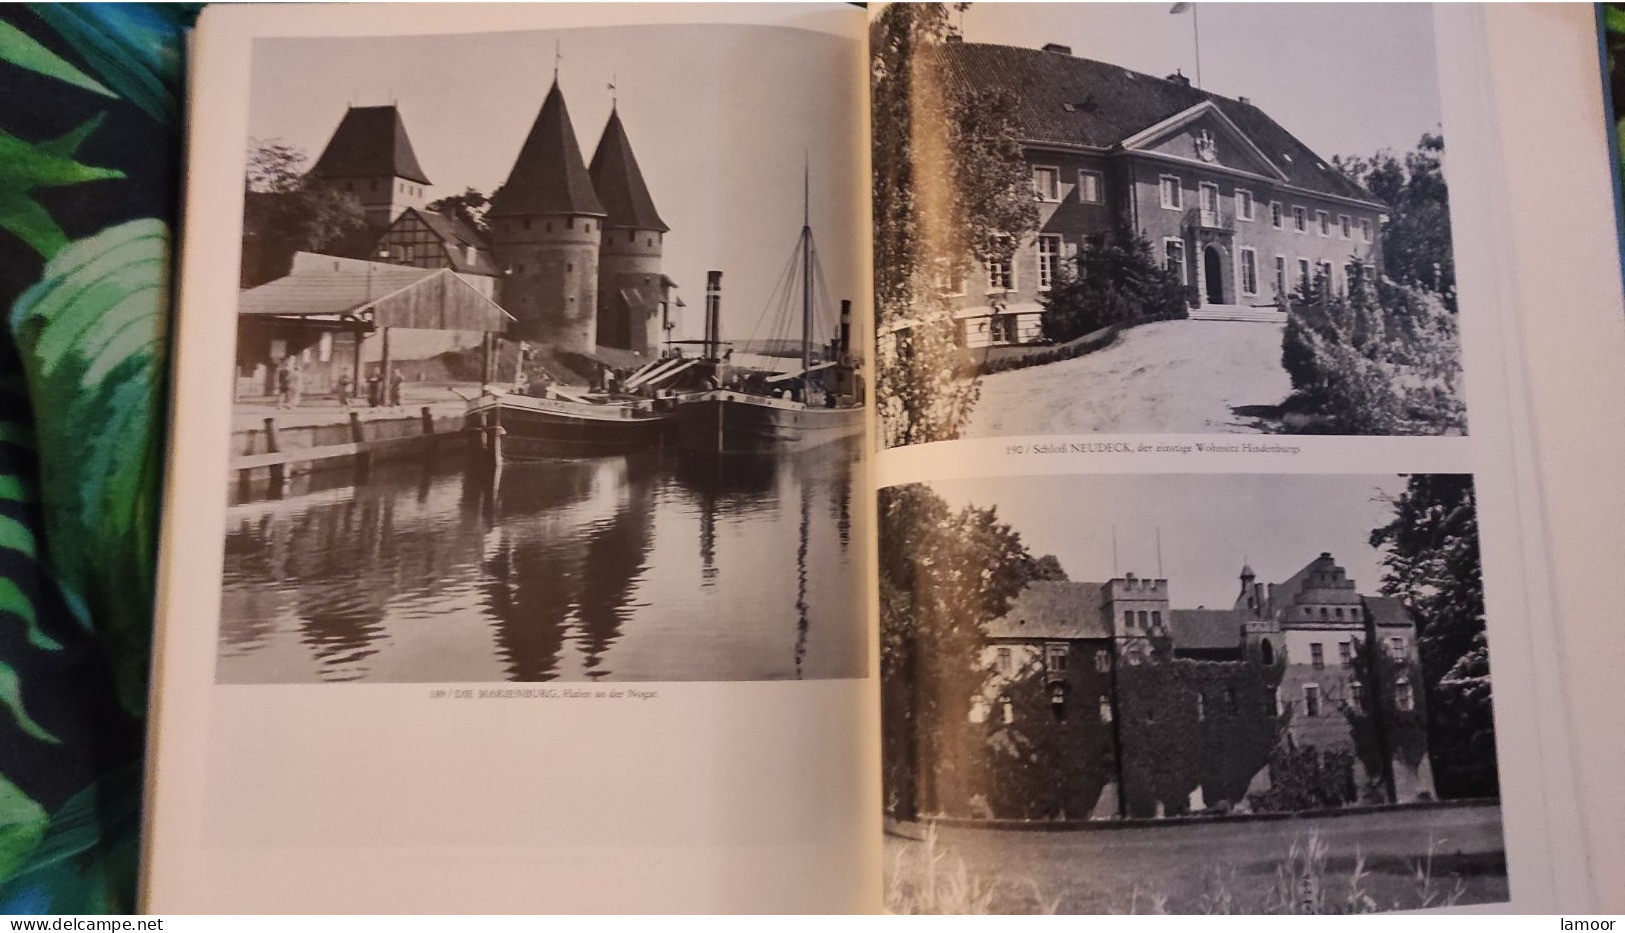 Ostpreussen  Buch  Memelgebiet Viele Fotos - Biographien & Memoiren